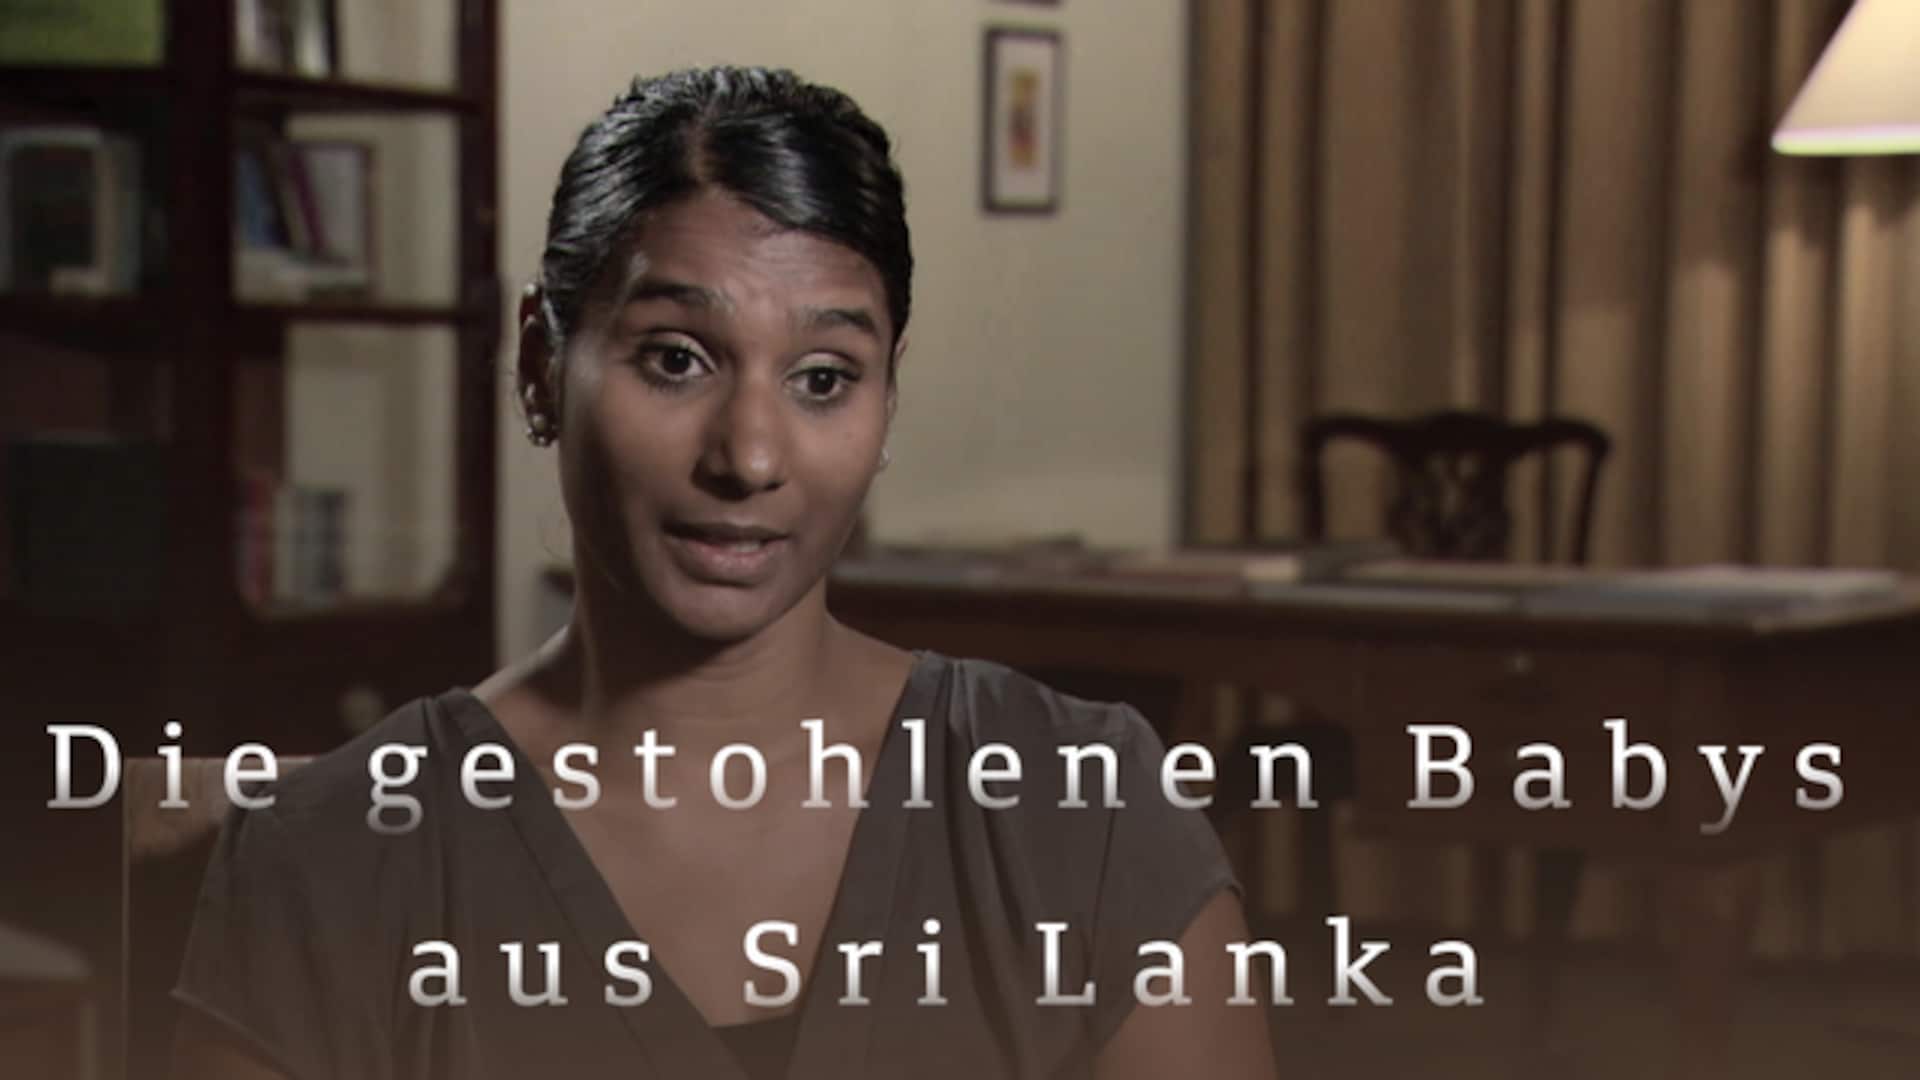 Die gestohlenen Babys aus Sri Lanka